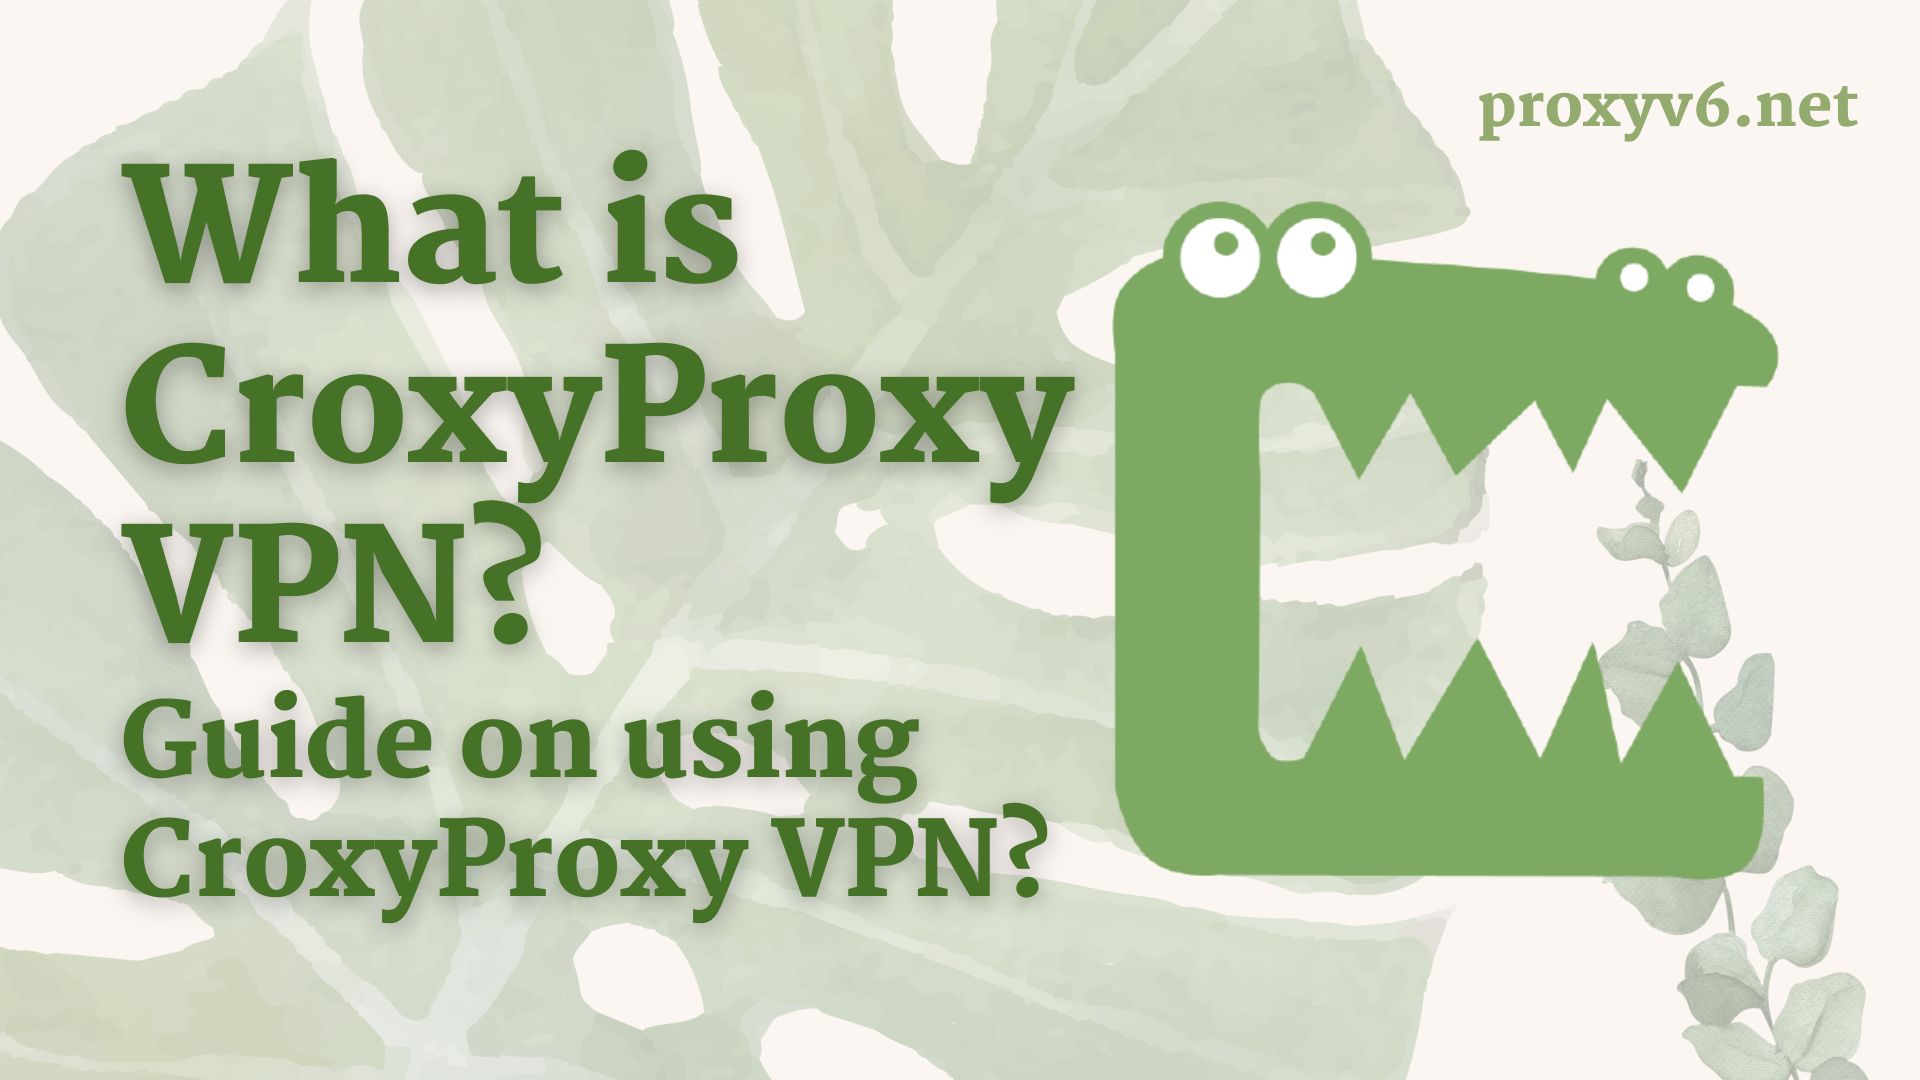 What is CroxyProxy VPN? Guide on using CroxyProxy VPN